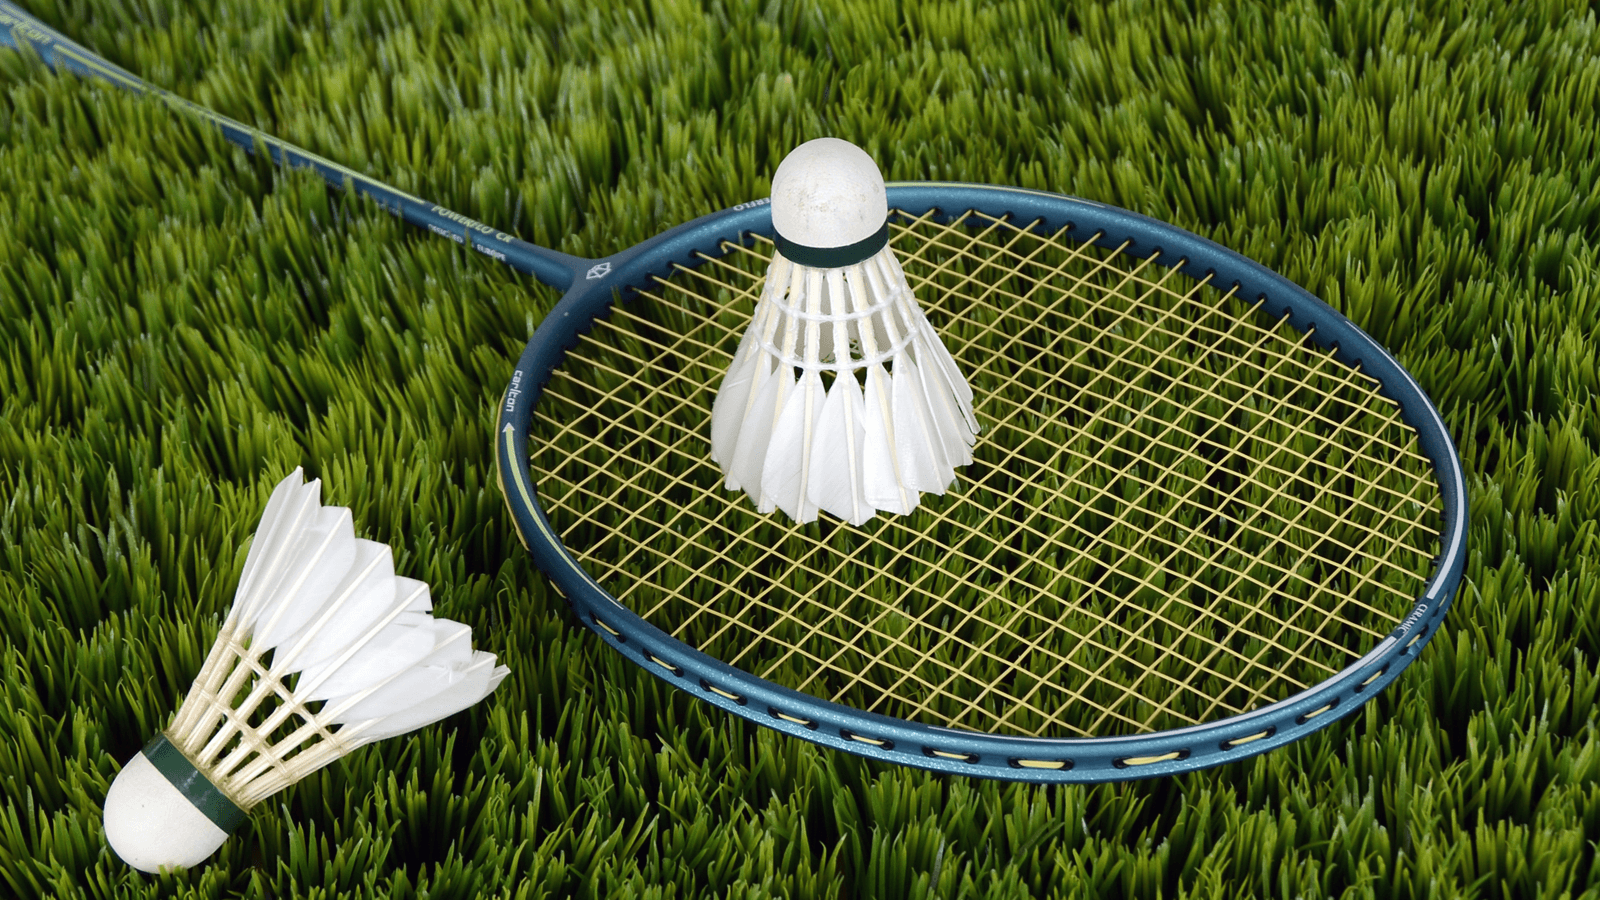 Cầu lông – Lợi ích sức khỏe tuyệt vời và bí quyết để trở thành tay vợt giỏi